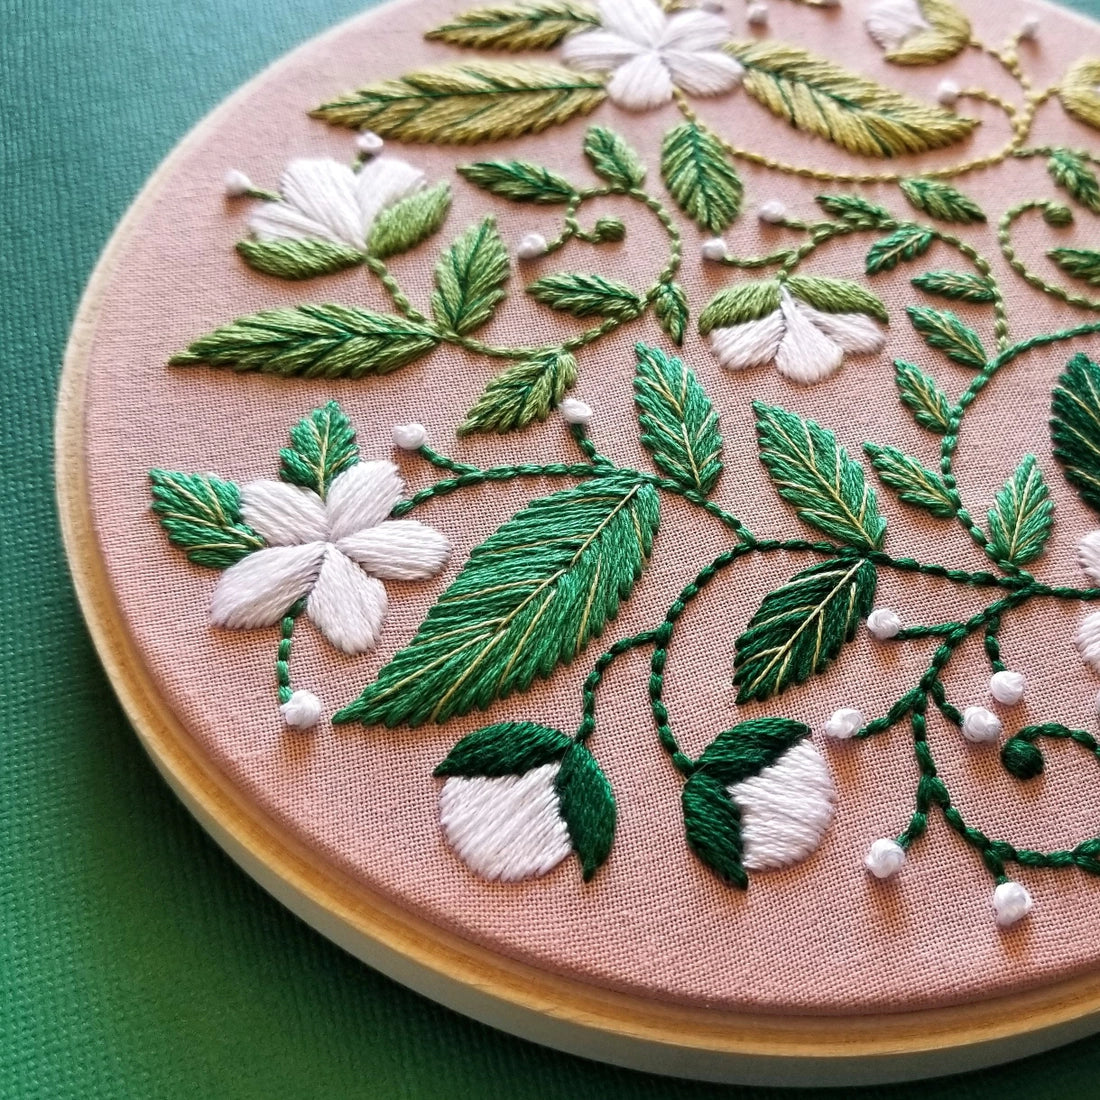 Blissful Bloom Beginner Embroidery Kit